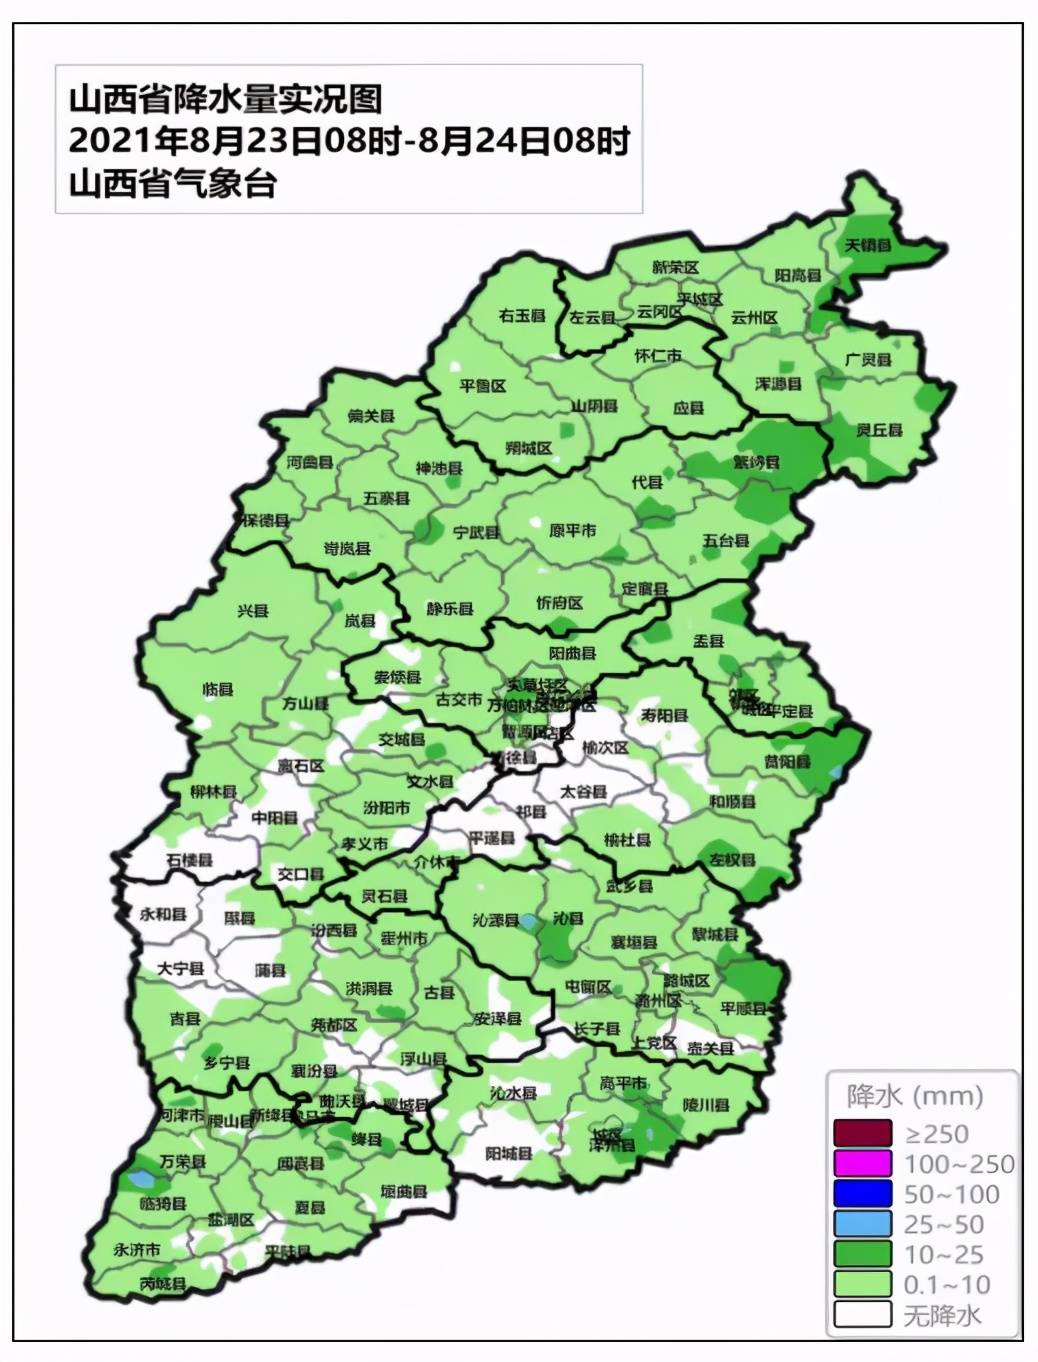 长治的大部,太原,晋城,晋中,运城和临汾的部分,吕梁的局部共81个县(市